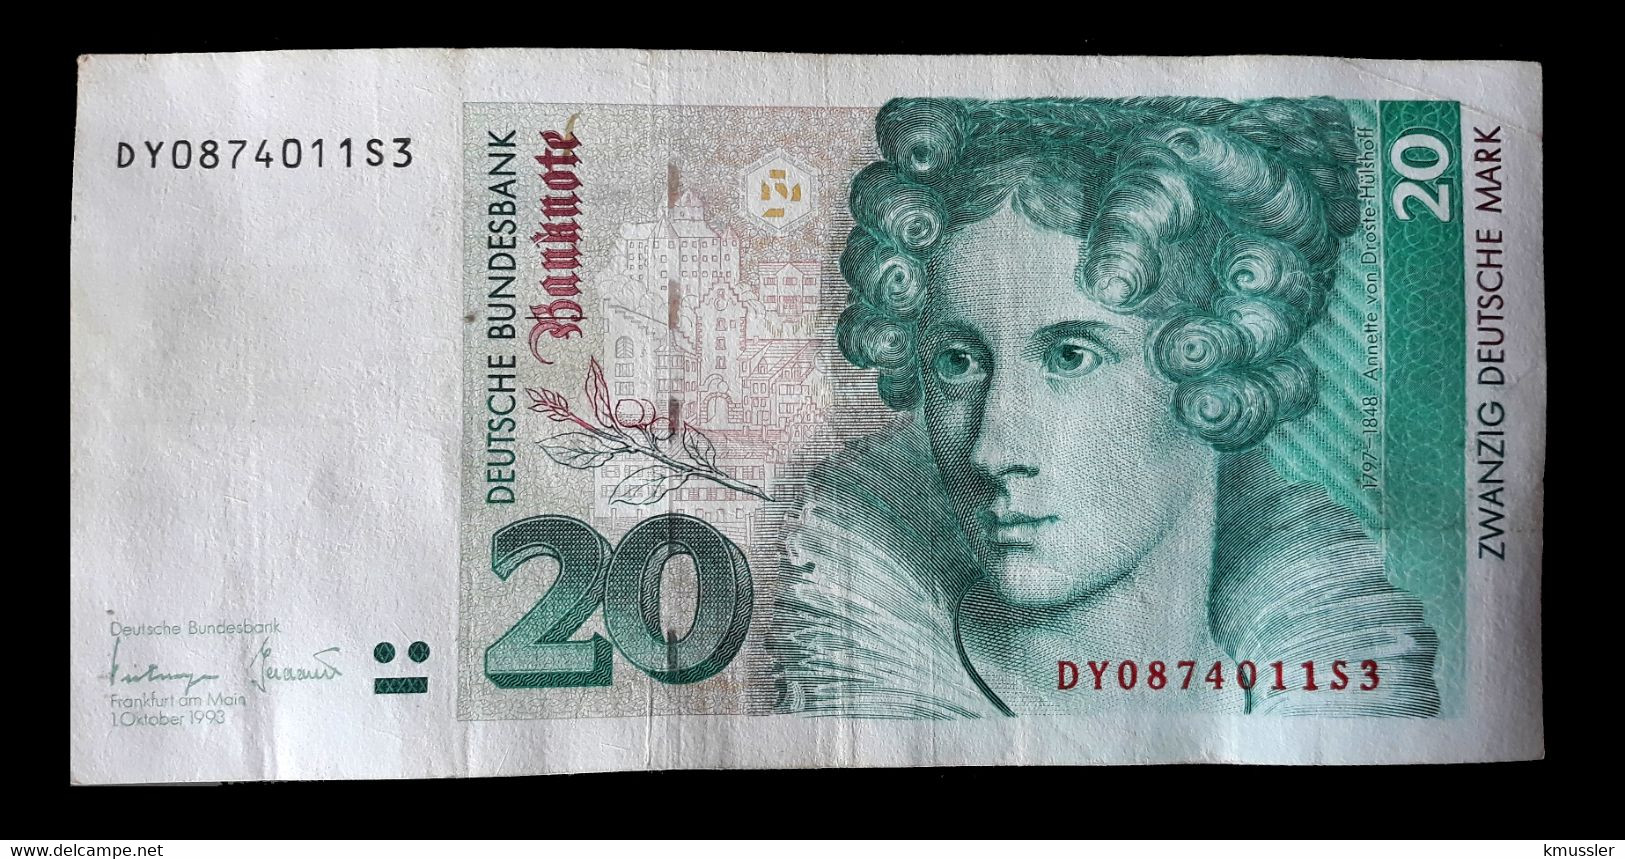 # # # Banknote Germany (Bundesrepublik) 20 Mark 1993 # # # - 20 DM